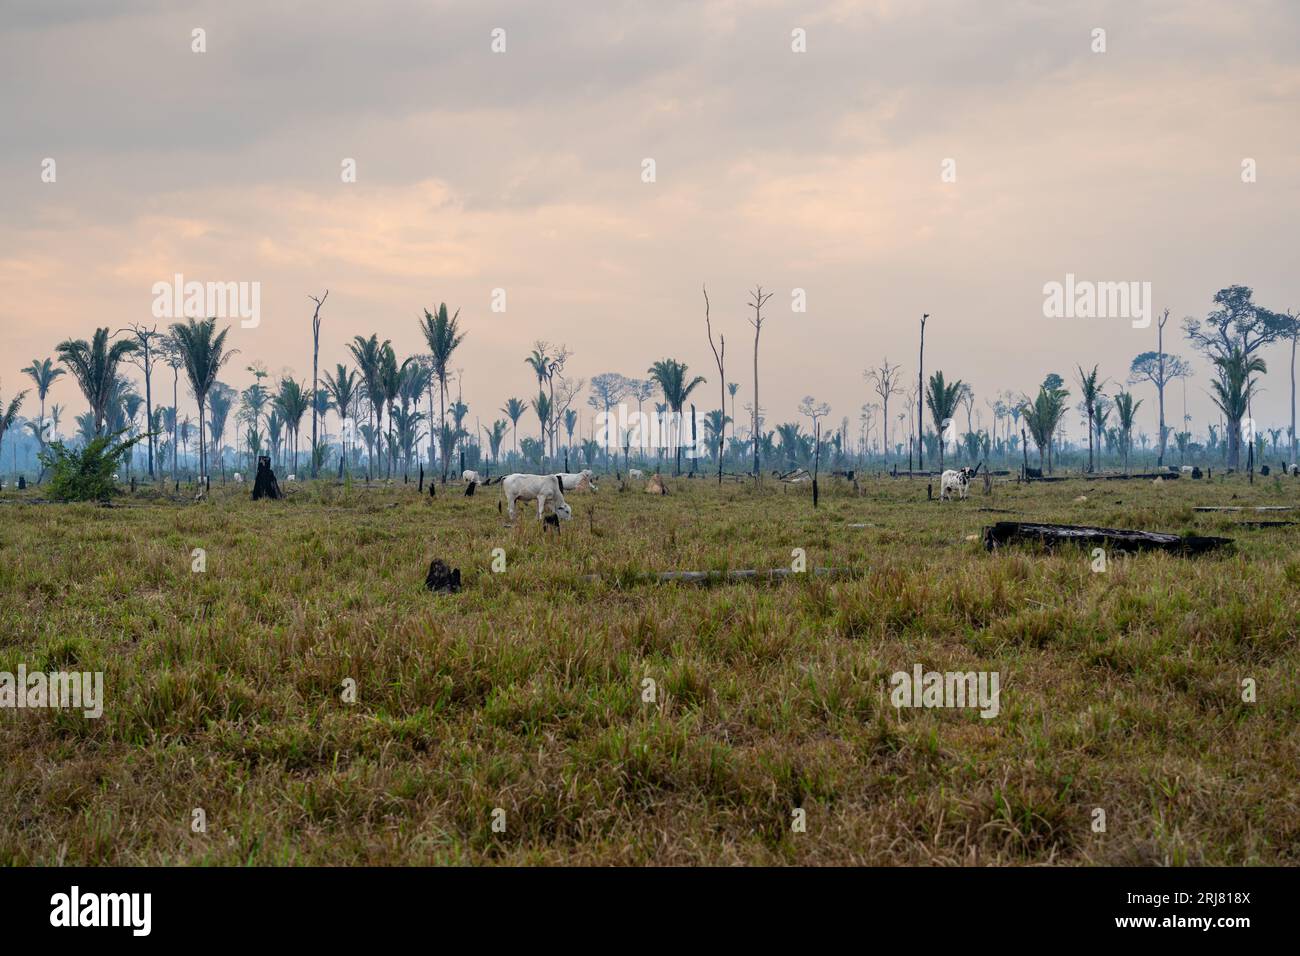 Pâturage de bétail et déforestation des arbres de forêt amazonienne. Terre détruite dans la ferme d'élevage. Amazonas, Brésil. Environnement, écologie, réchauffement climatique. Banque D'Images